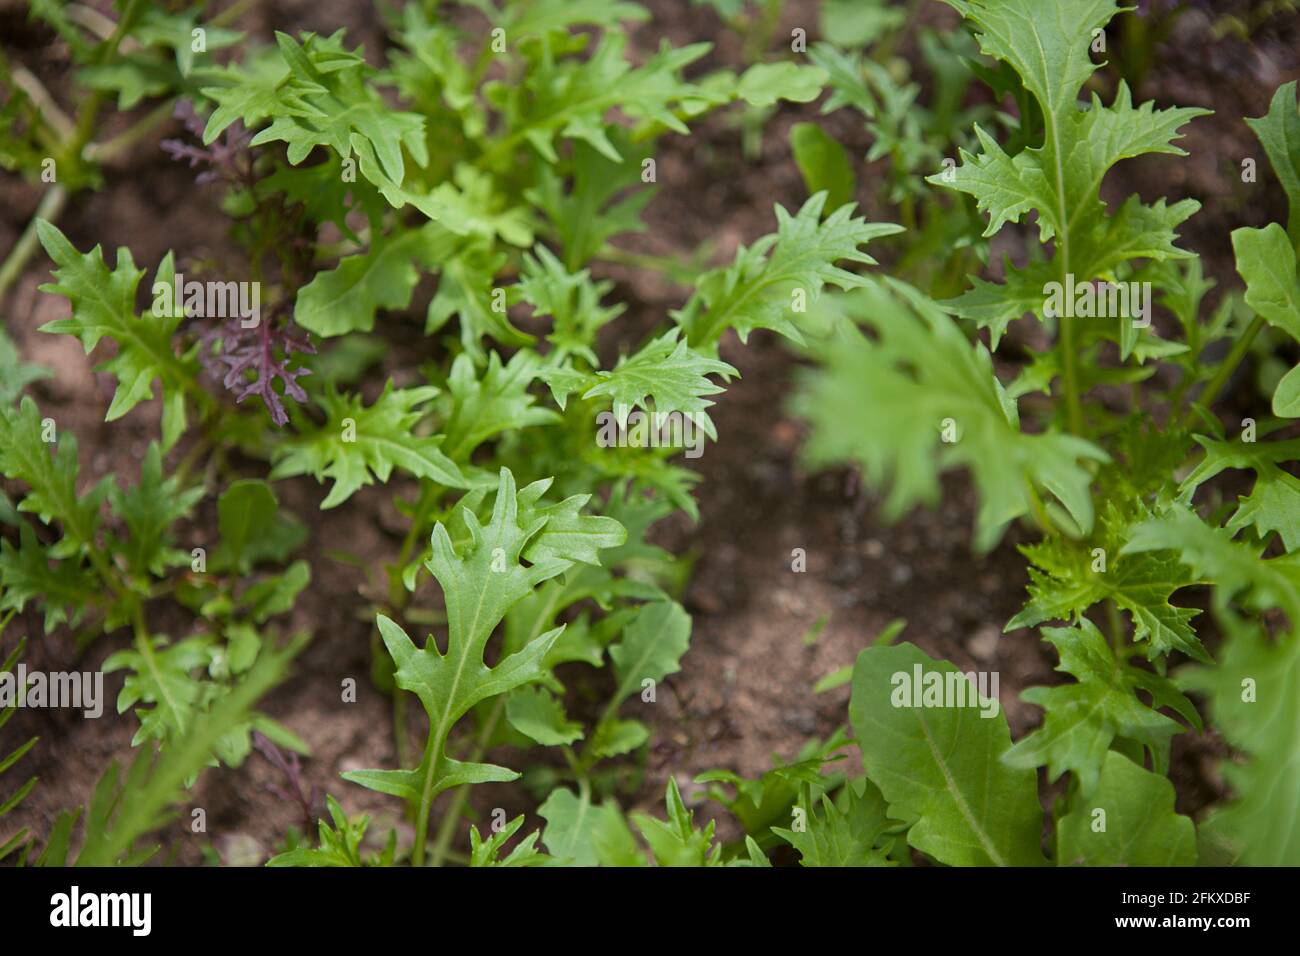 Hojas de ensalada / verduras de hoja que crecen en el suelo en el jardín, en su mayoría cohete (rúcula, eruca vesicaria) Foto de stock